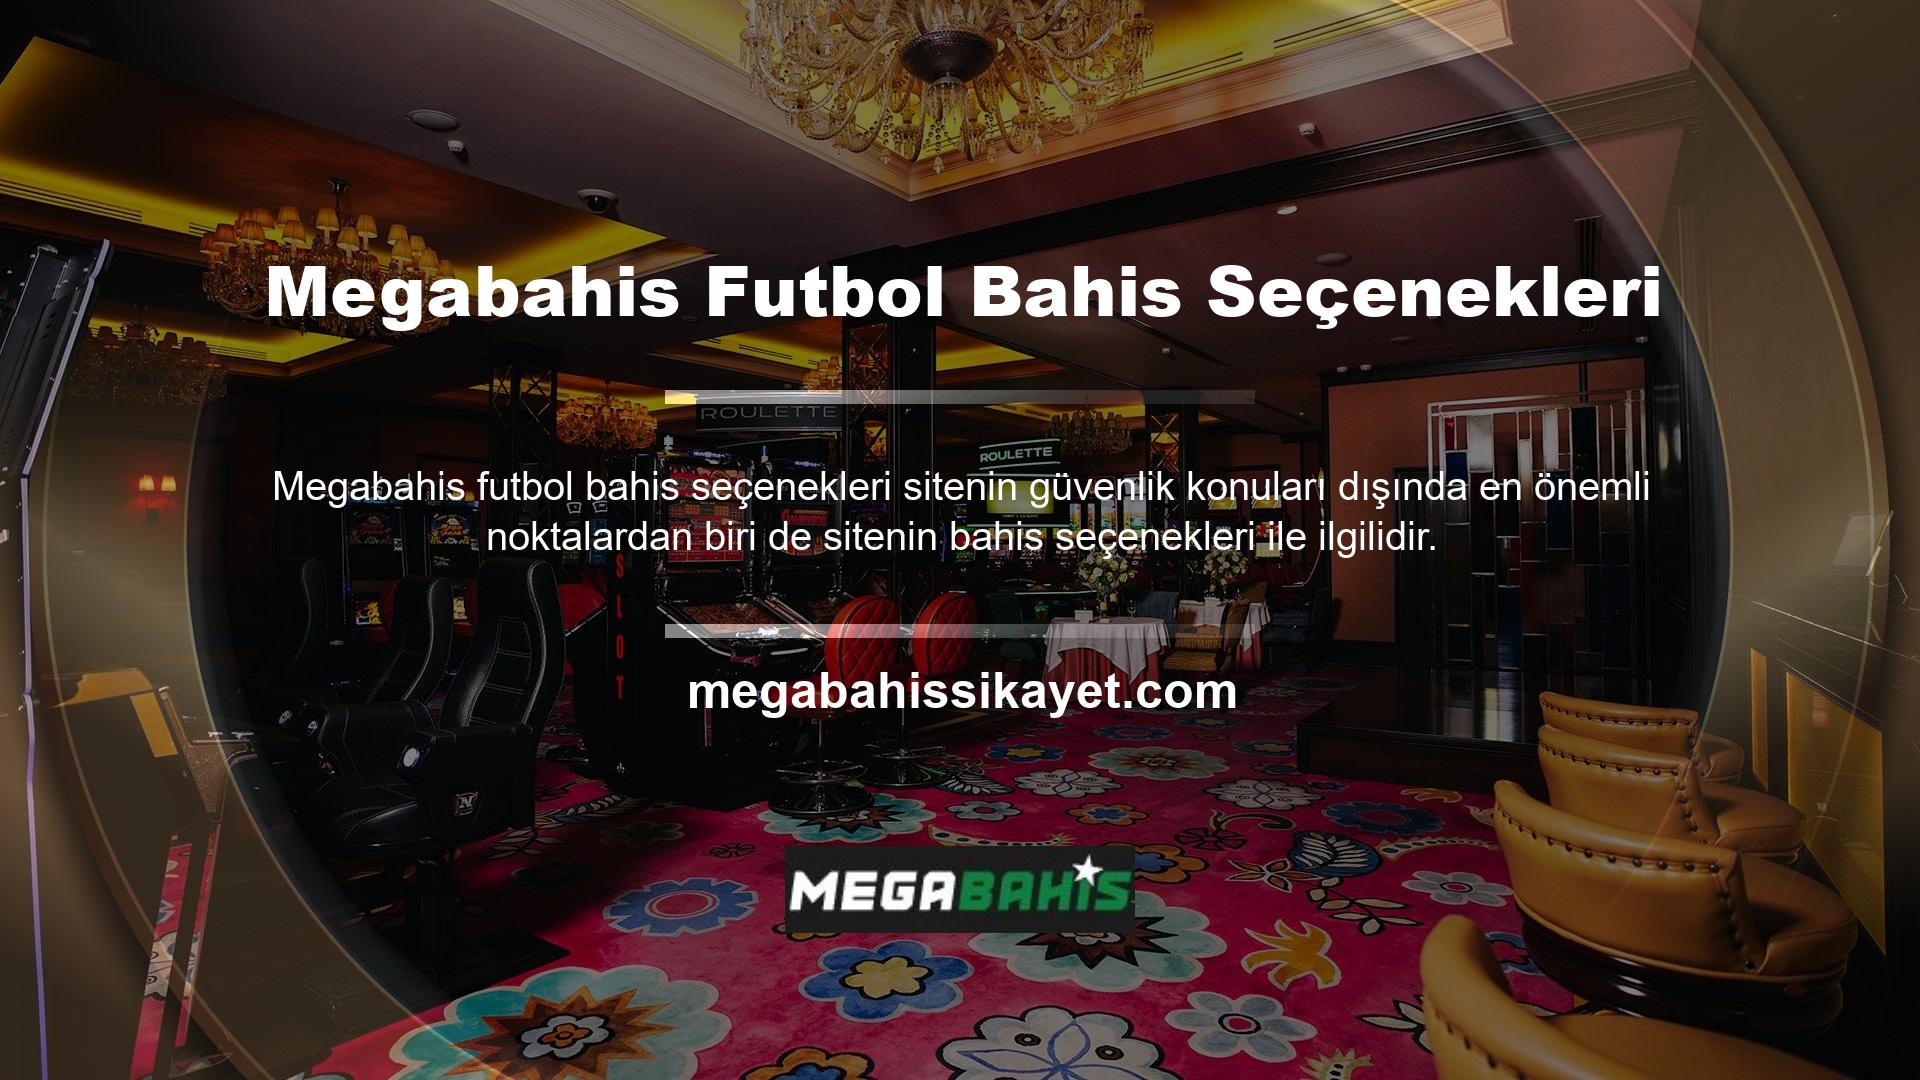 Megabahis web sitesi, aşağıdakiler gibi farklı futbol maçlarına bahis oynamanıza izin verir: B